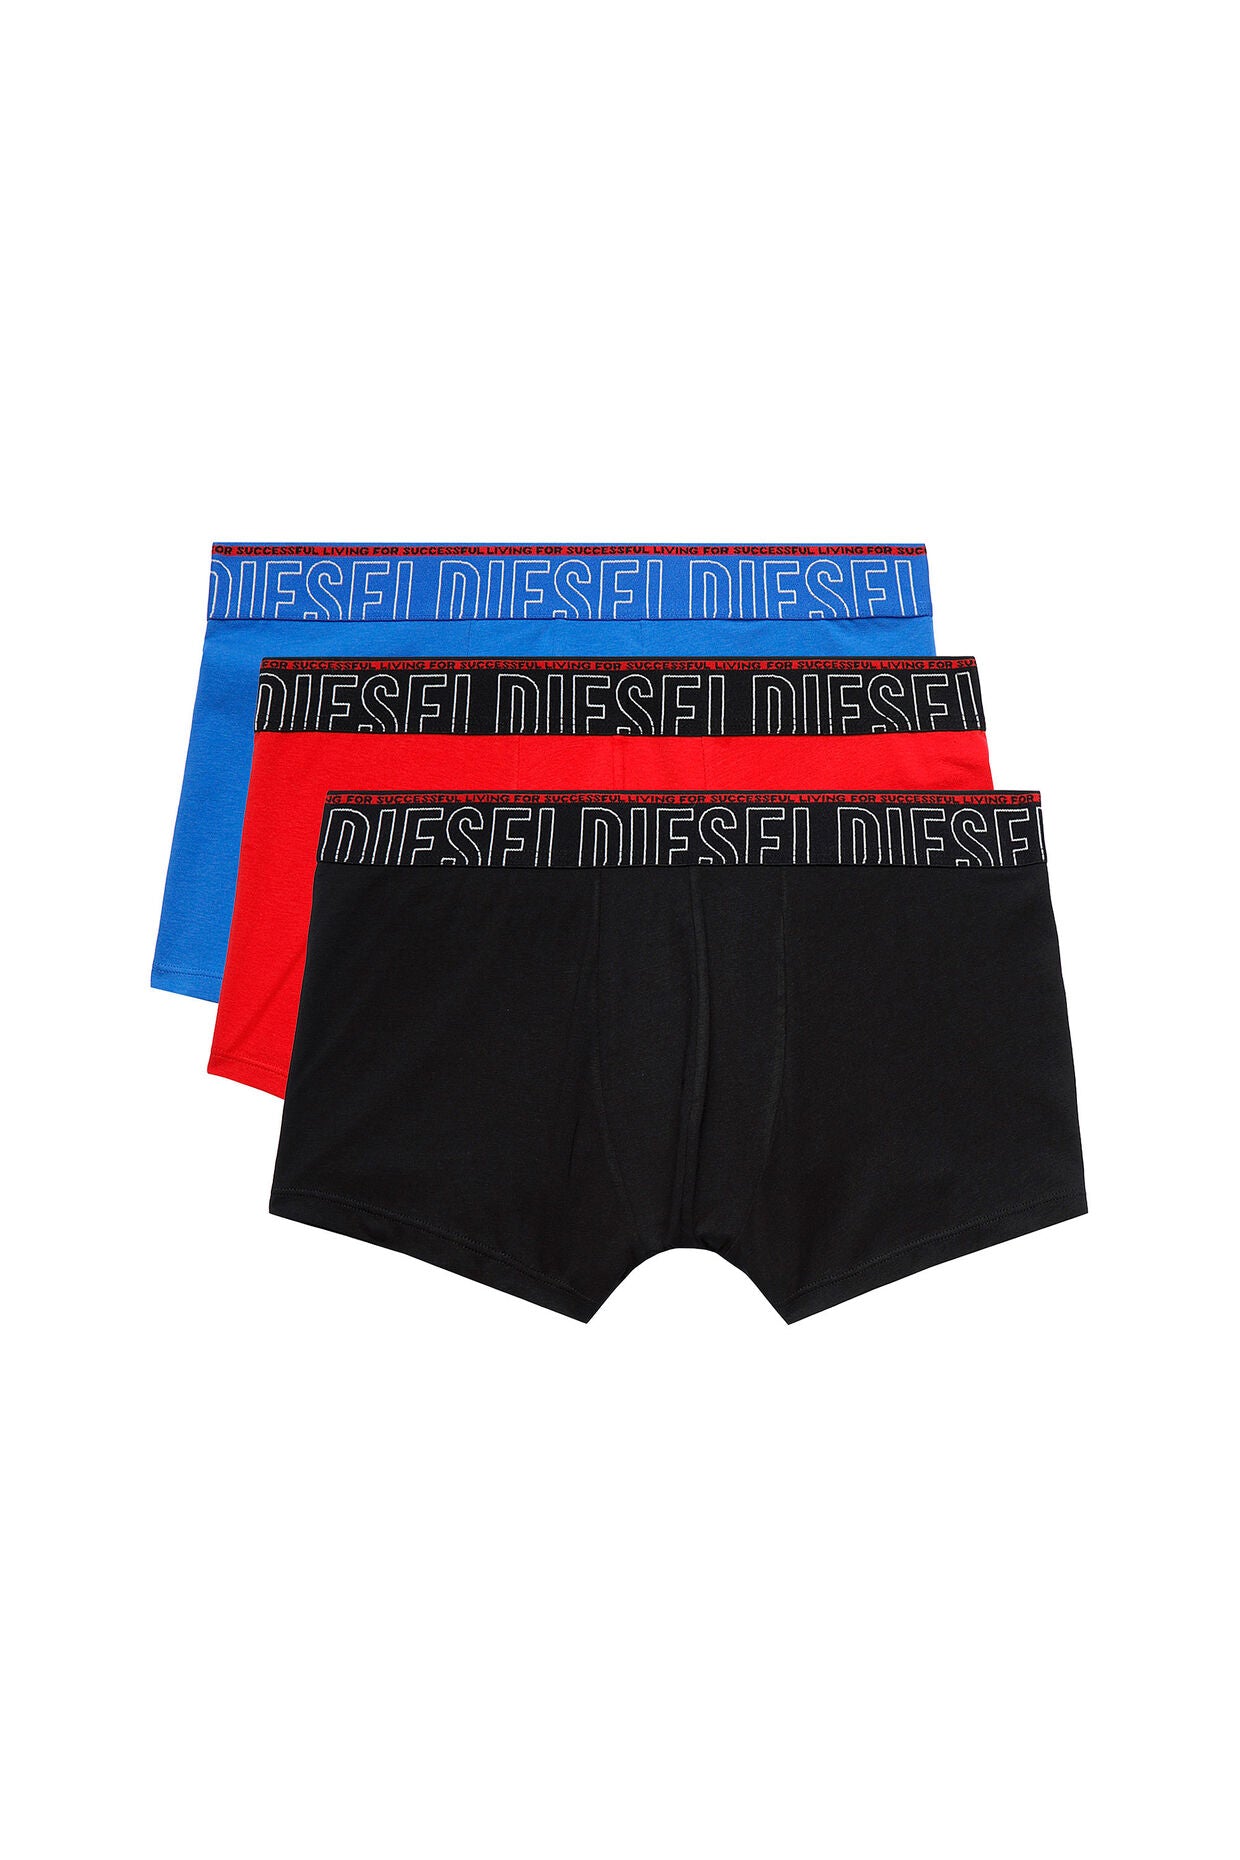 Diesel - Damien Boxers 3 Pack - Blue/Red/Black